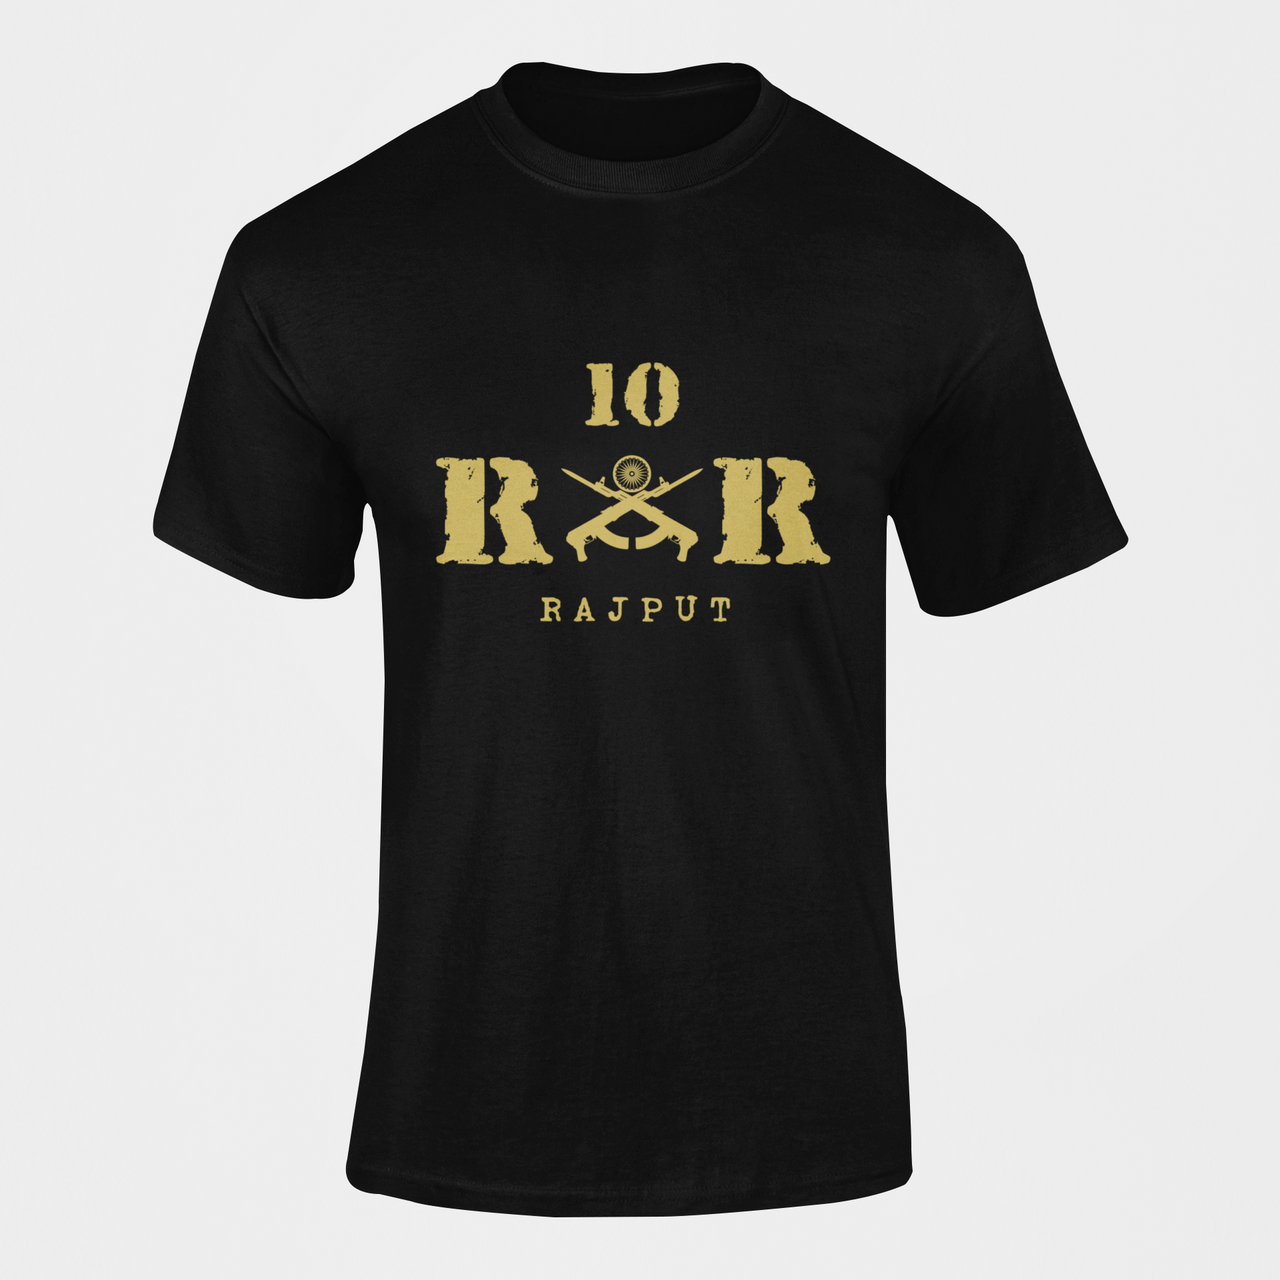 Rashtriya Rifles T-shirt - 10 RR Rajput (Men)